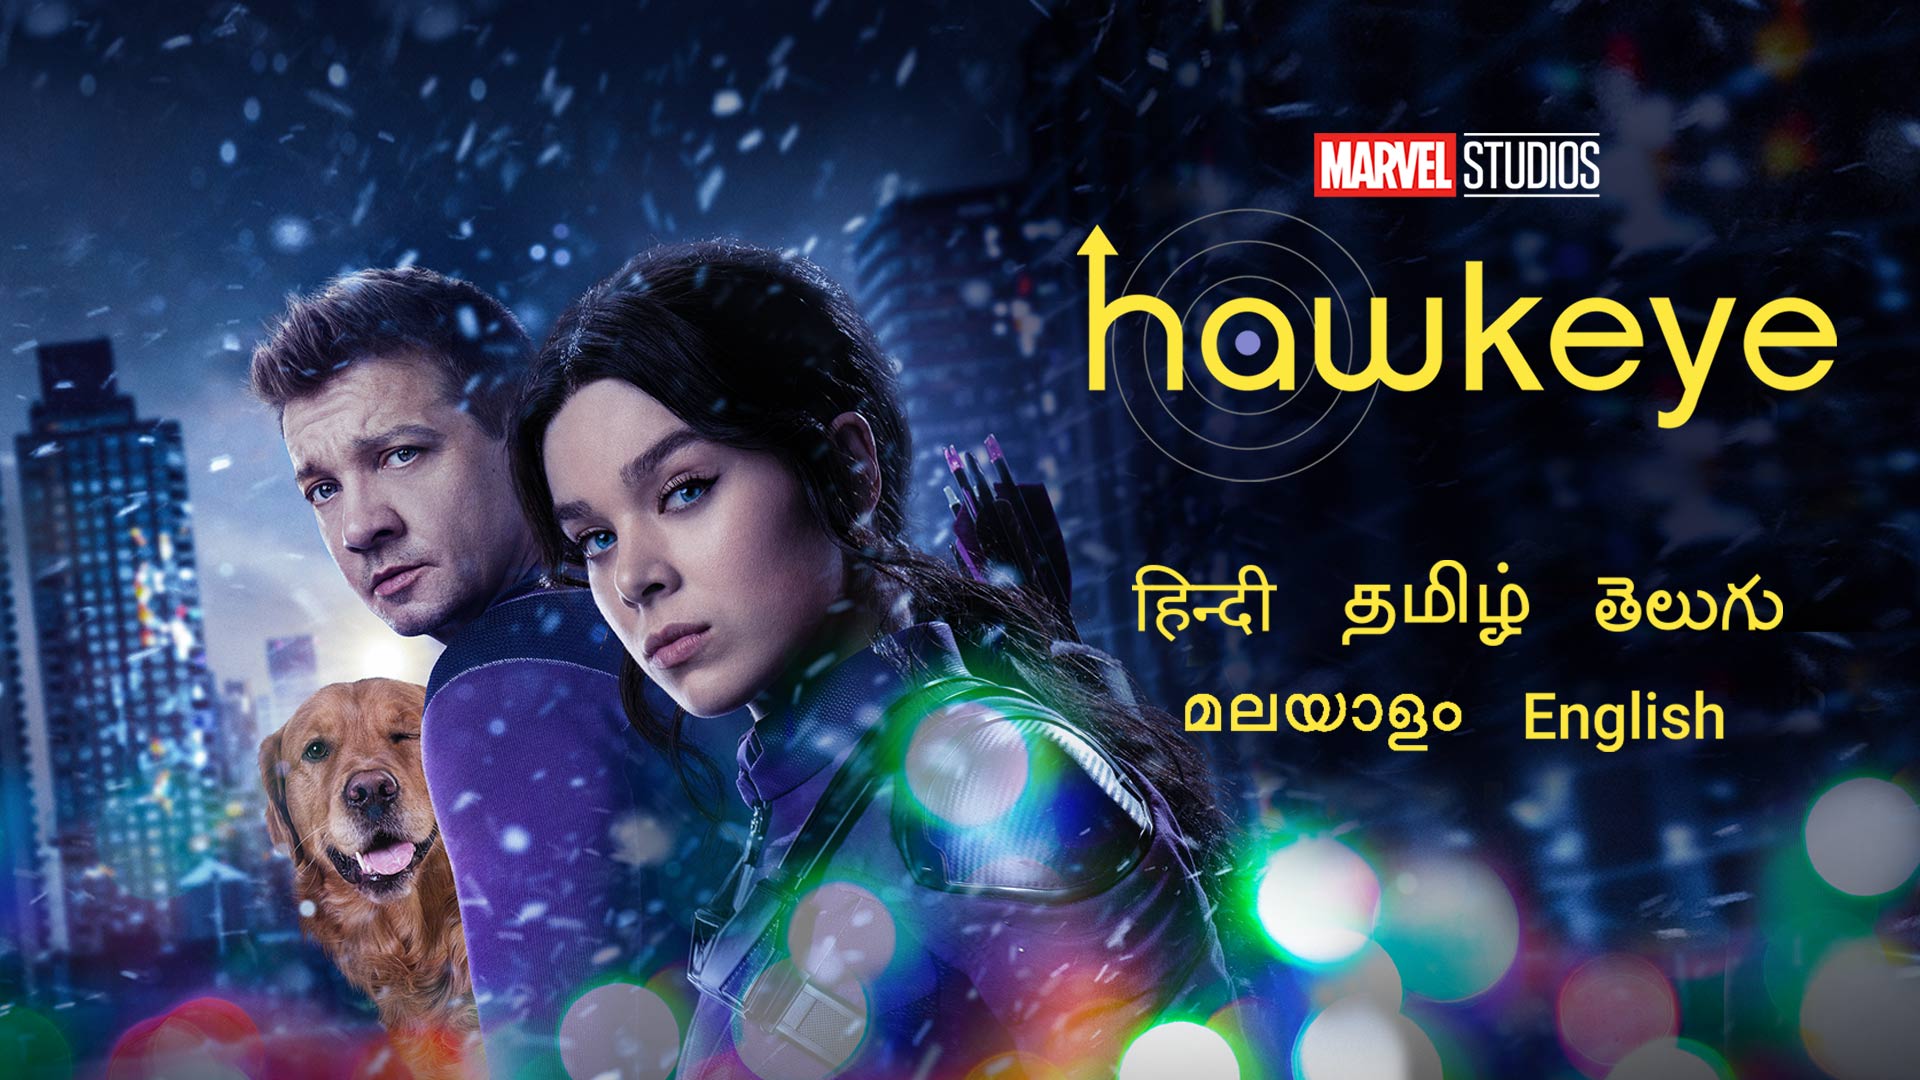 Hawkeye - [Season 1] HDRip Tamil Movie Watch Online Free